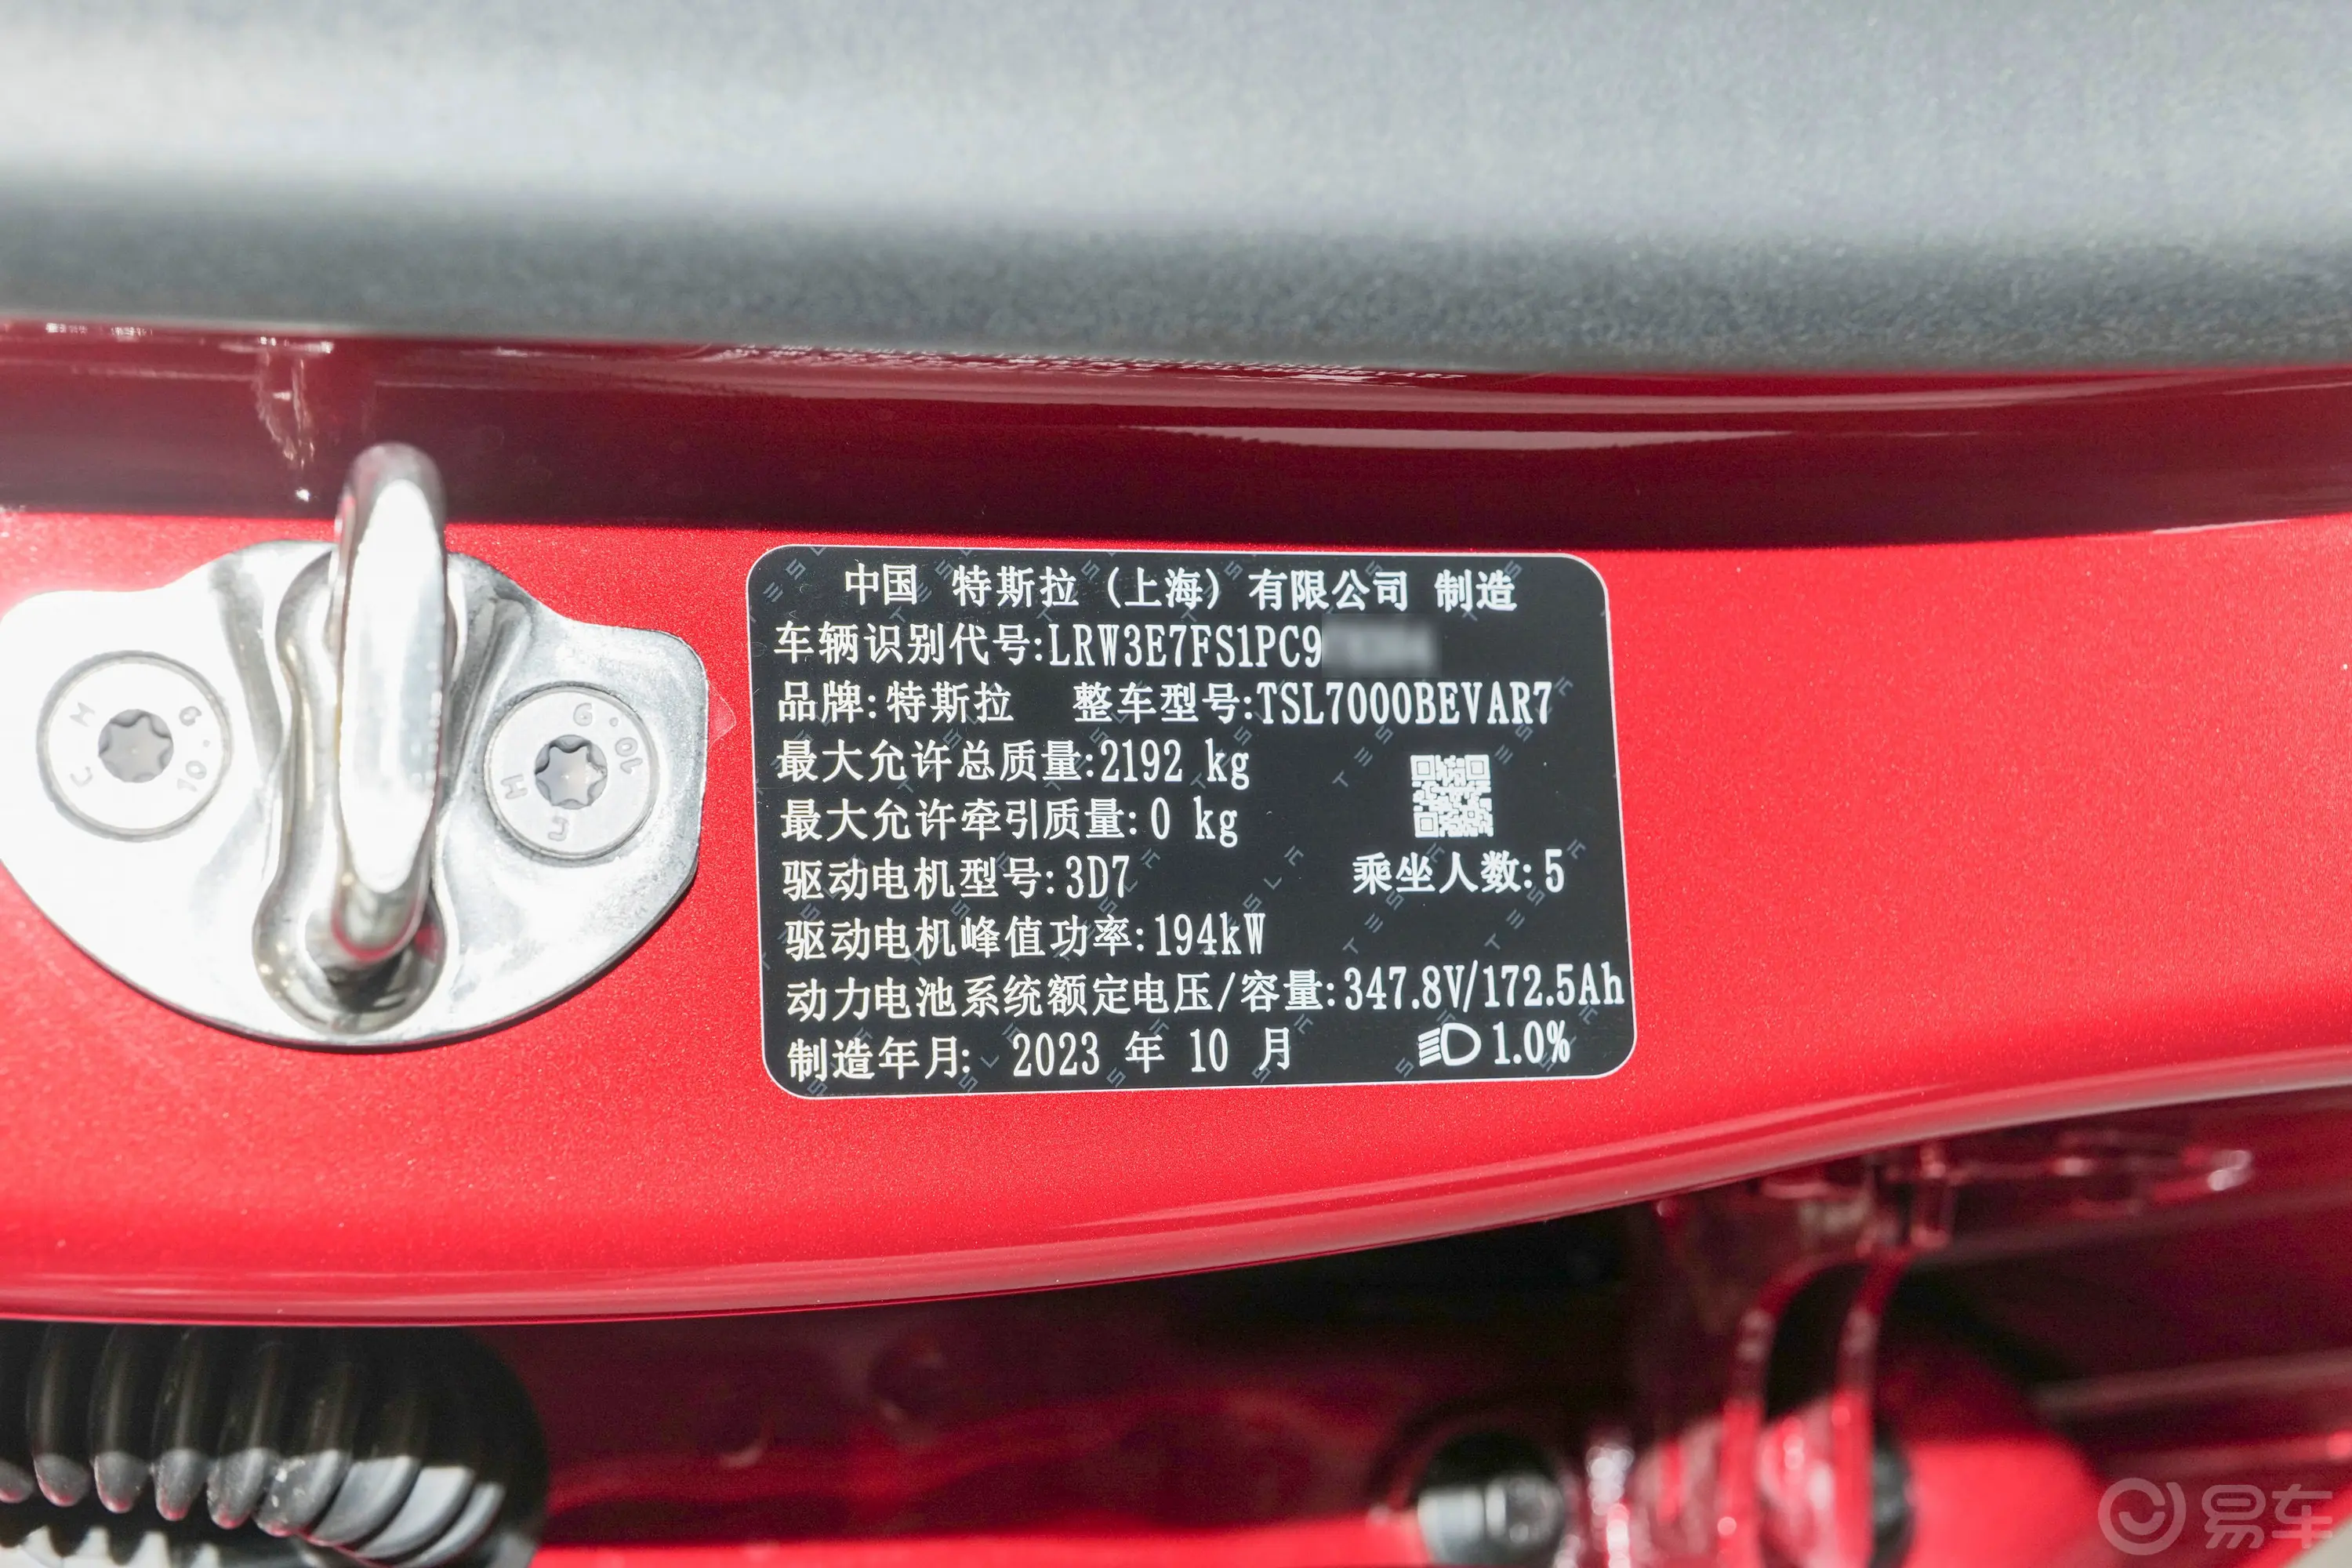 Model 3606km 后轮驱动版车辆信息铭牌